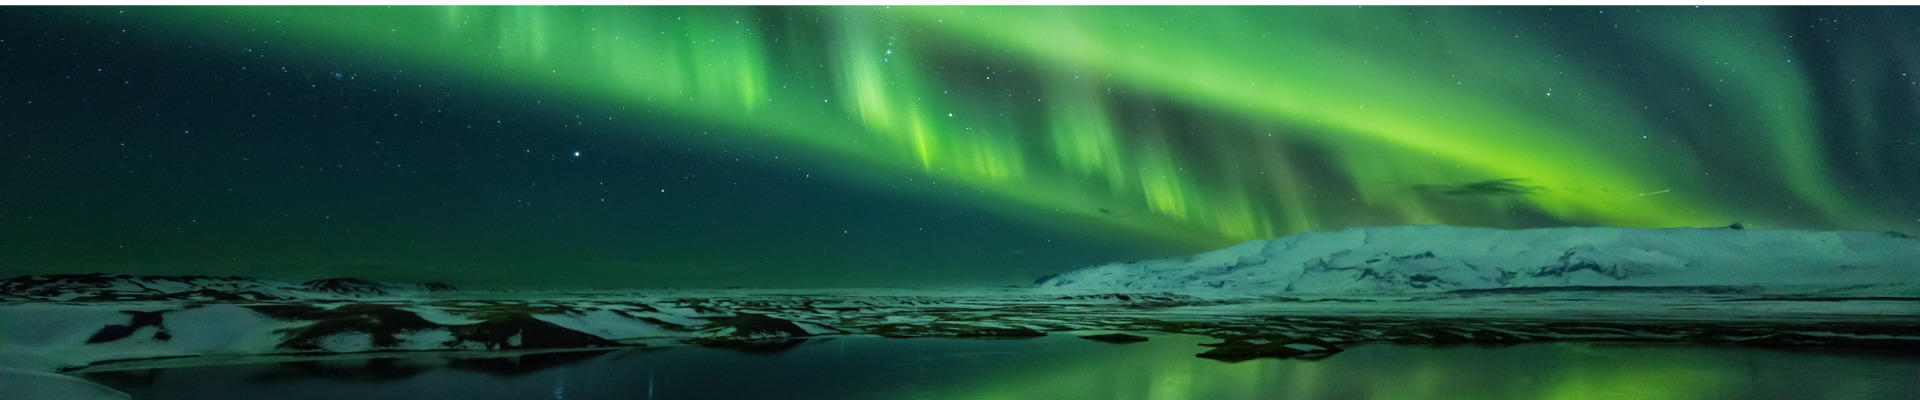 Viaggio in Islanda: Aurora Boreale, Grotte di Ghiaccio e Cascate